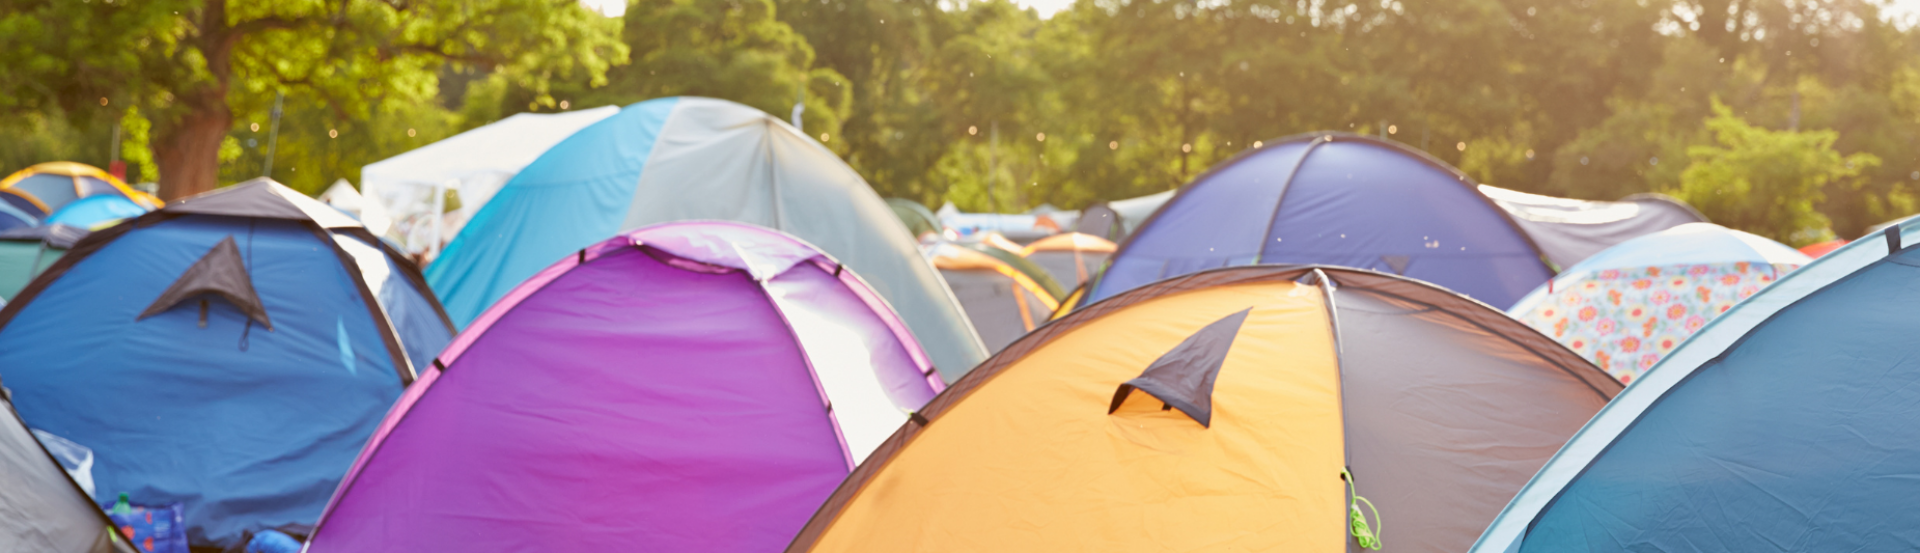 Second Tent Event tweedehands tenten